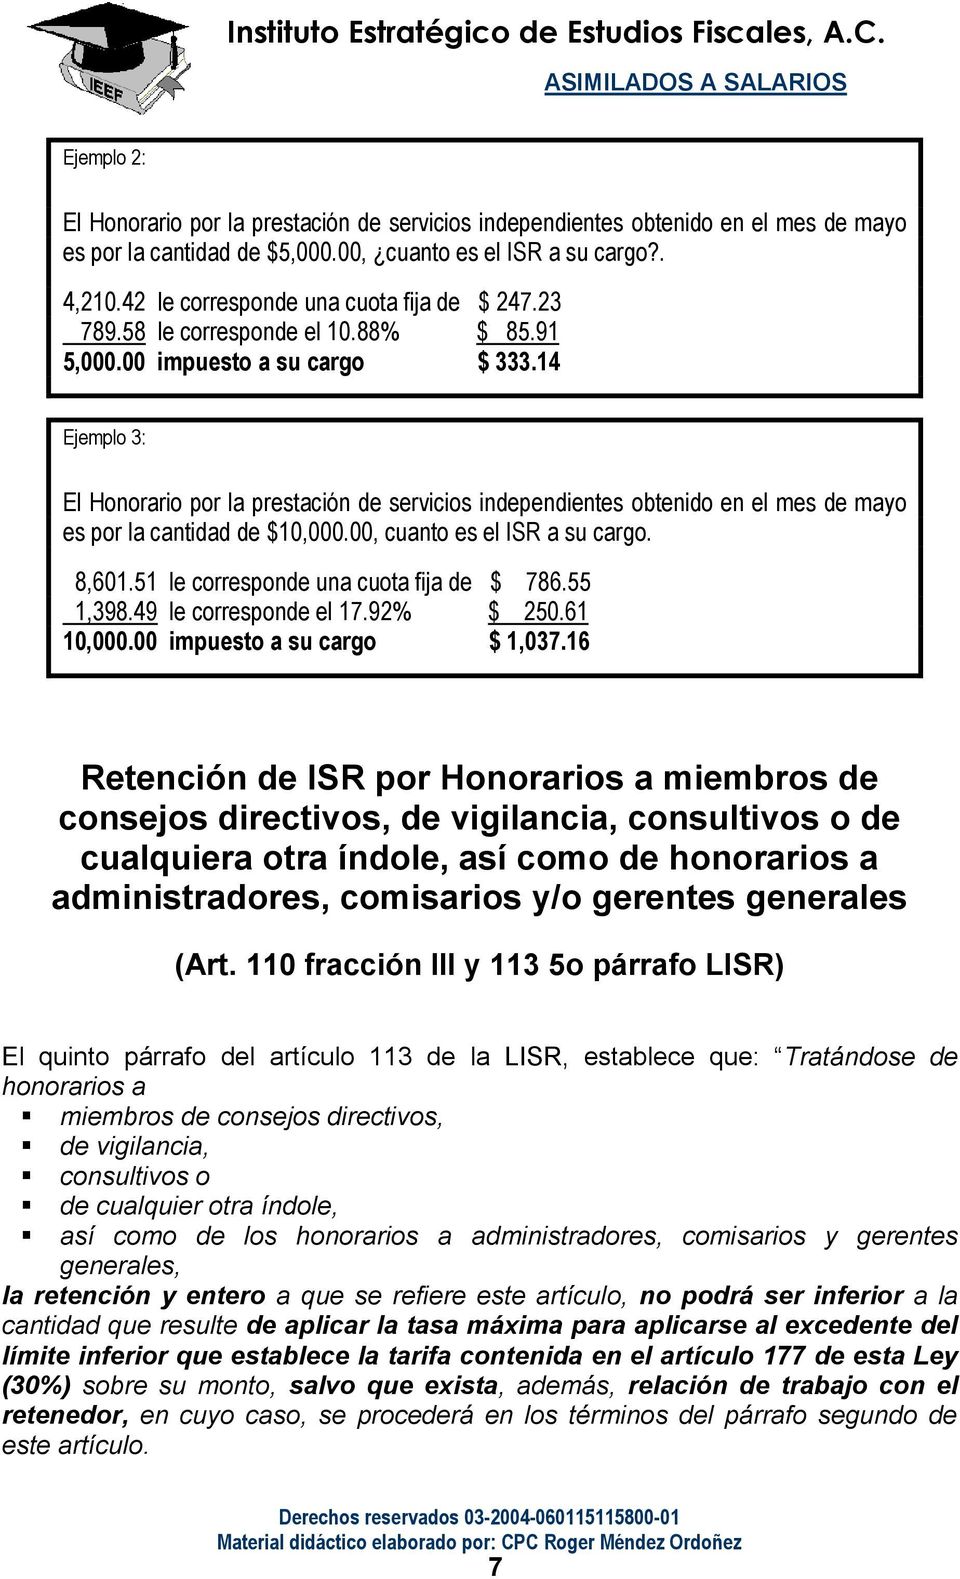 14 Ejemplo 3: El Honorario por la prestación de servicios independientes obtenido en el mes de mayo es por la cantidad de $10,000.00, cuanto es el ISR a su cargo. 8,601.